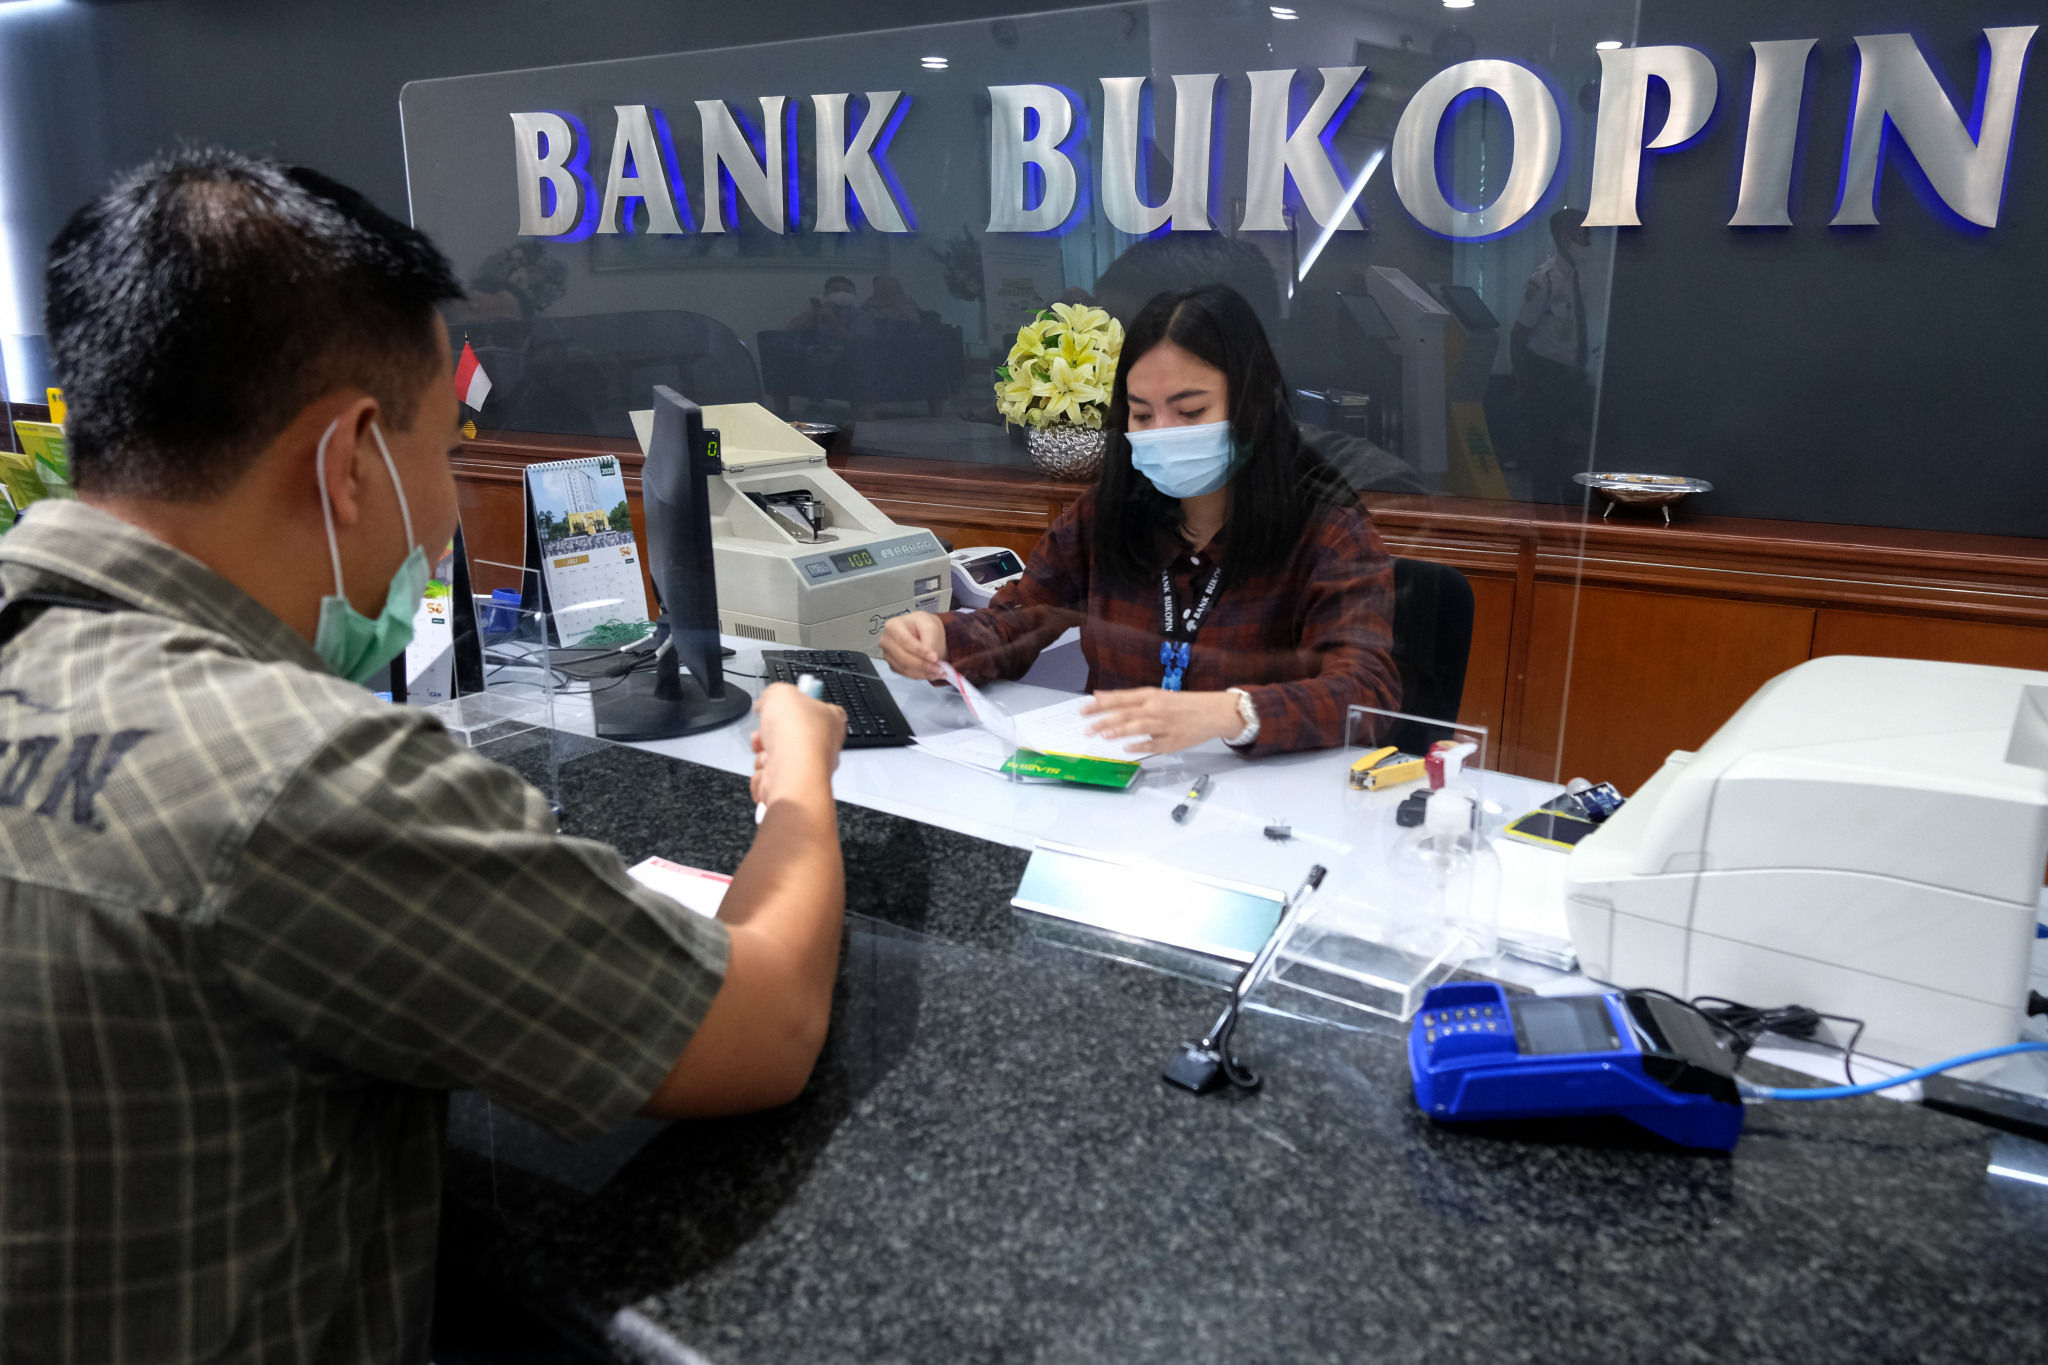 <p>Suasana pelayanan nasabah di Kantor Pusat Bank Bukopin di Jalan MT Haryono, Pancoran, Jakarta, Jumat, 3 Juni 2020. Pemegang saham terbesar kedua PT Bank Bukopin Tbk. , KB Kookmin Bank berencana menjadi pemegang saham mayoritas dengan membidik 51% saham perseroan. Untuk bisa mengenggam 51 persen saham, Kookmin Bank akan meningkatkan porsi dari 22 persen ke 26 persen dalam Penawaran Umum Terbatas (PUT) V Bank Bukopin tahun ini. Foto: Ismail Pohan/TrenAsia</p>
